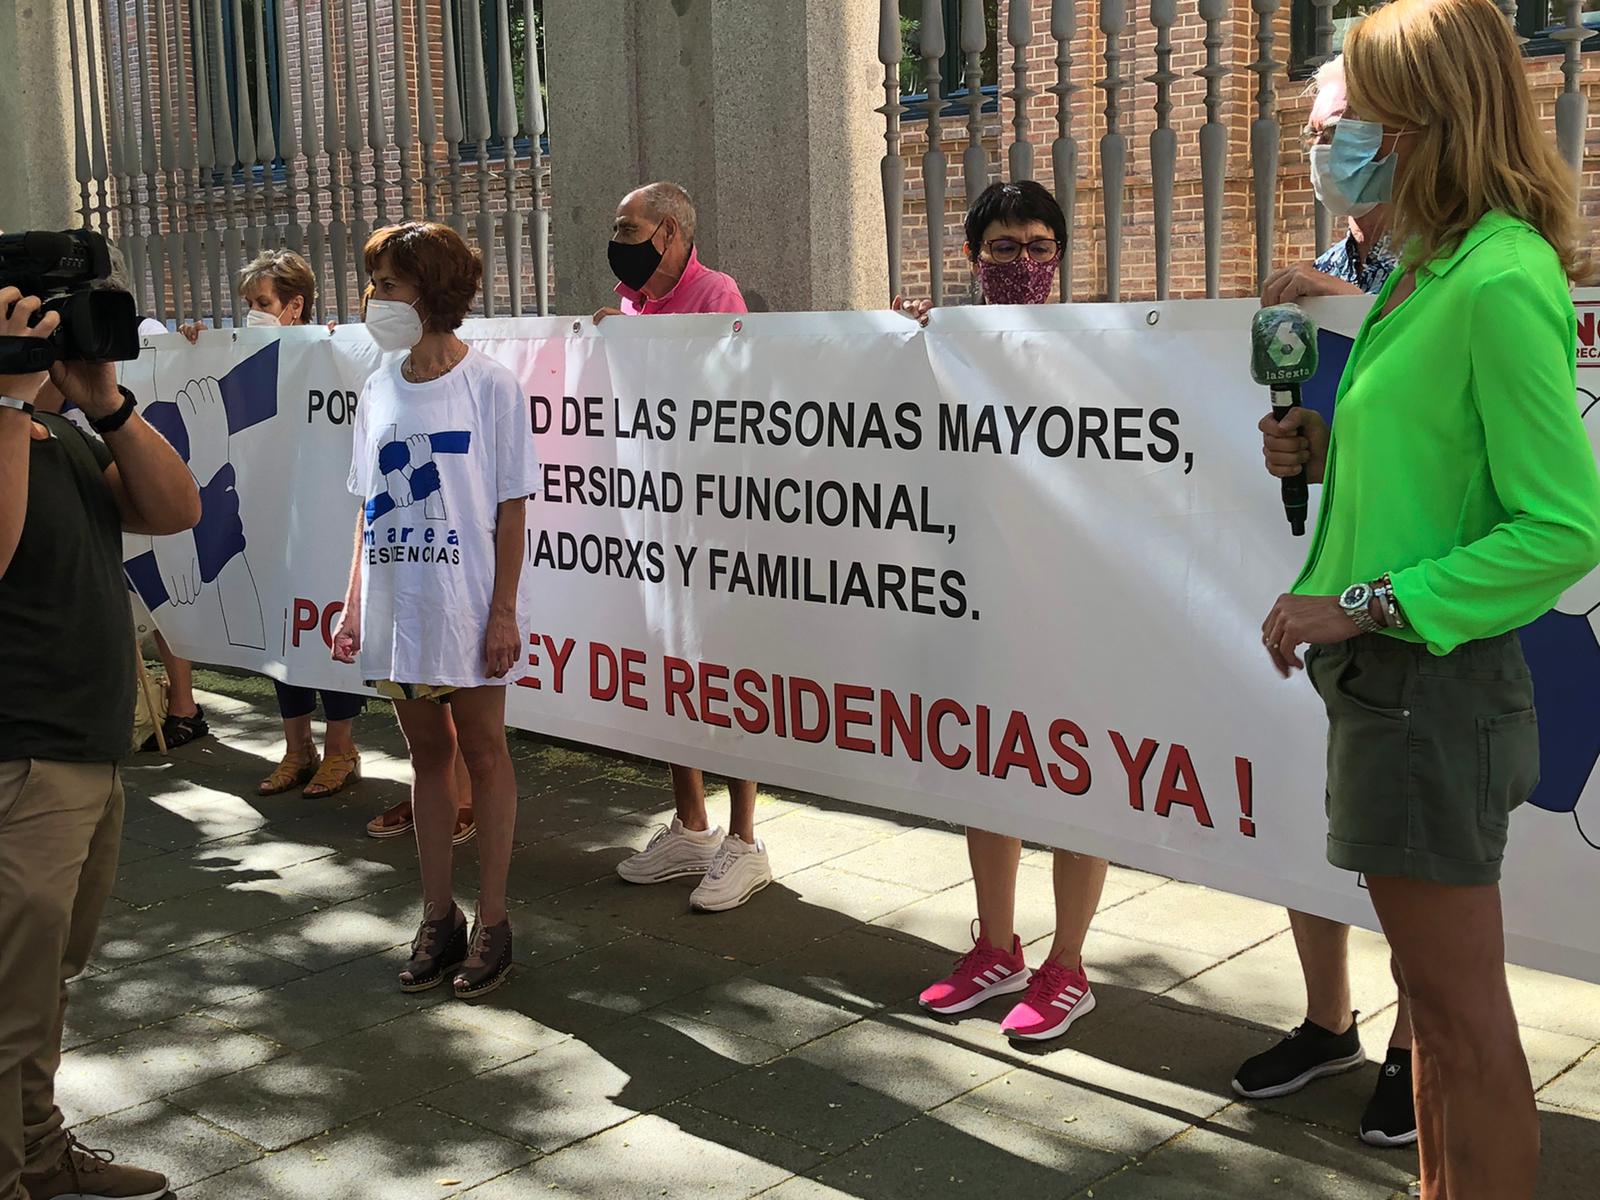 Manifestación en Madrid este miércoles 19 para exigir una ley de residencias